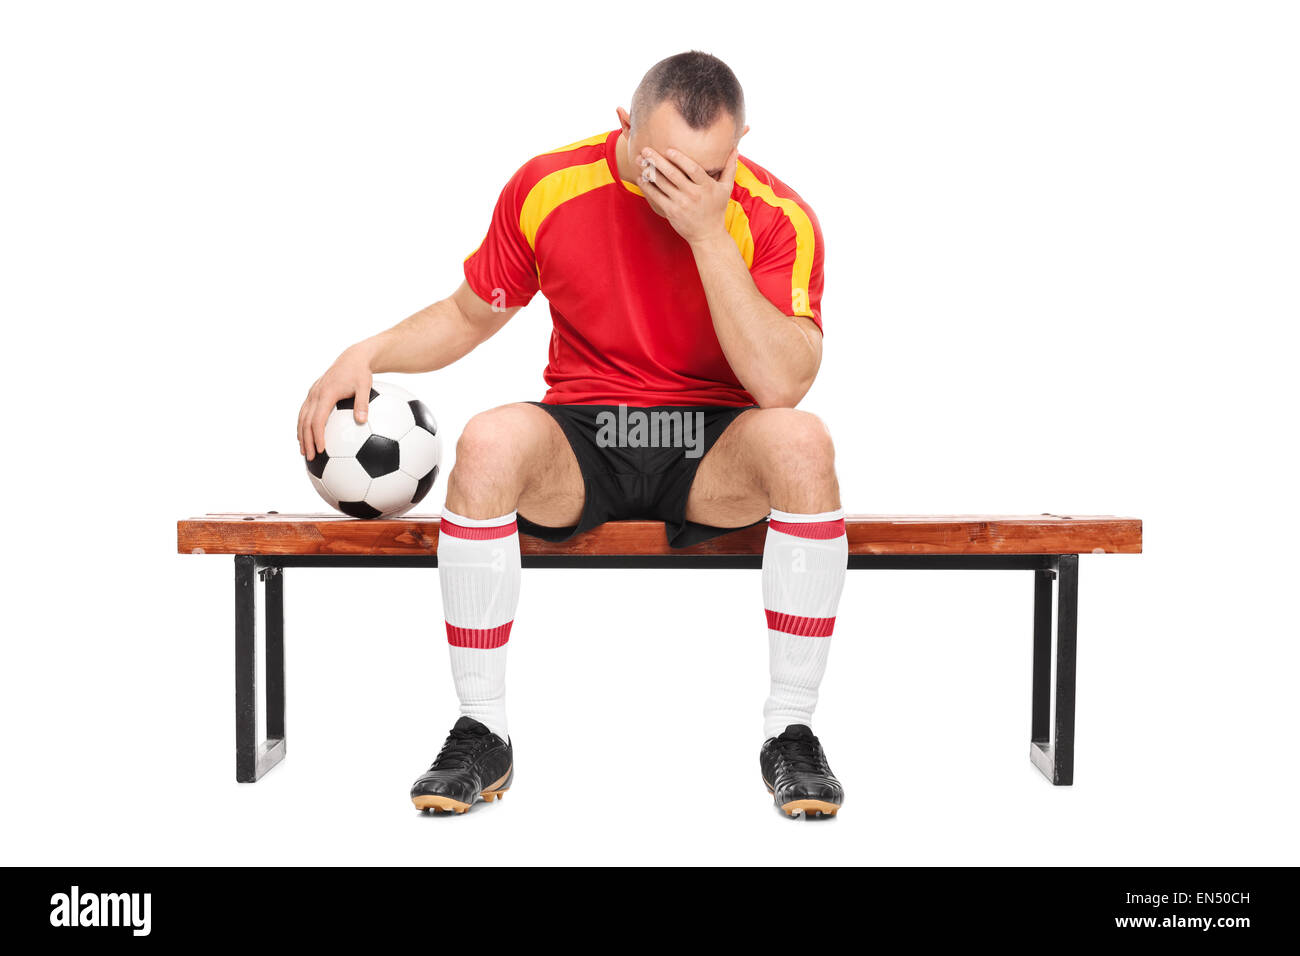 Preoccupato per il giocatore di football seduto su una panca in legno, tenendo una palla e nasconde la sua faccia con una sola mano isolati su sfondo bianco Foto Stock